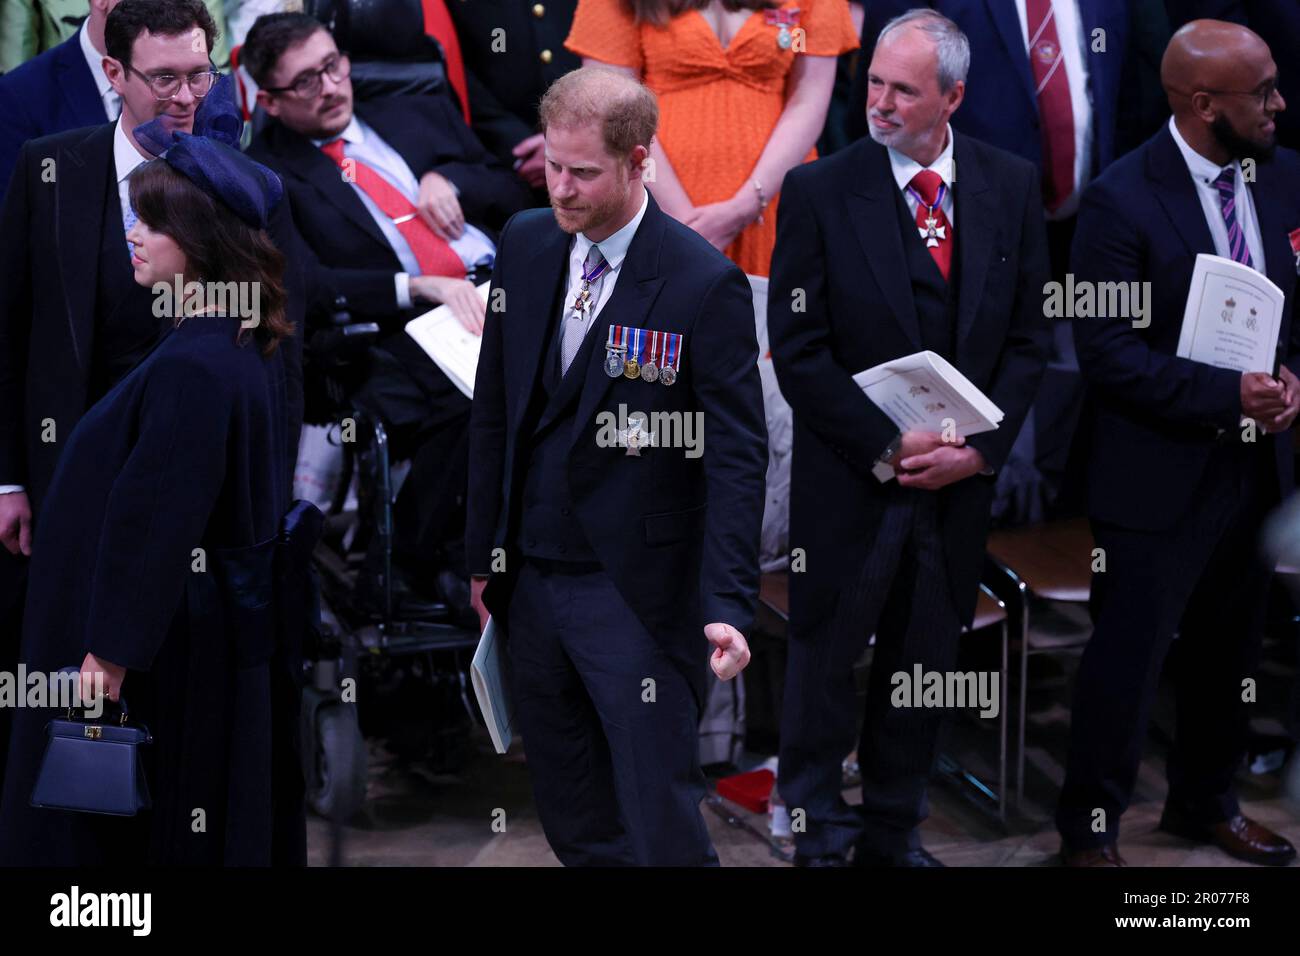 Der Herzog von Sussex nach der Krönung von König Karl III. Und Königin Camilla in Westminster Abbey, London. Foto: Samstag, 6. Mai 2023. Stockfoto